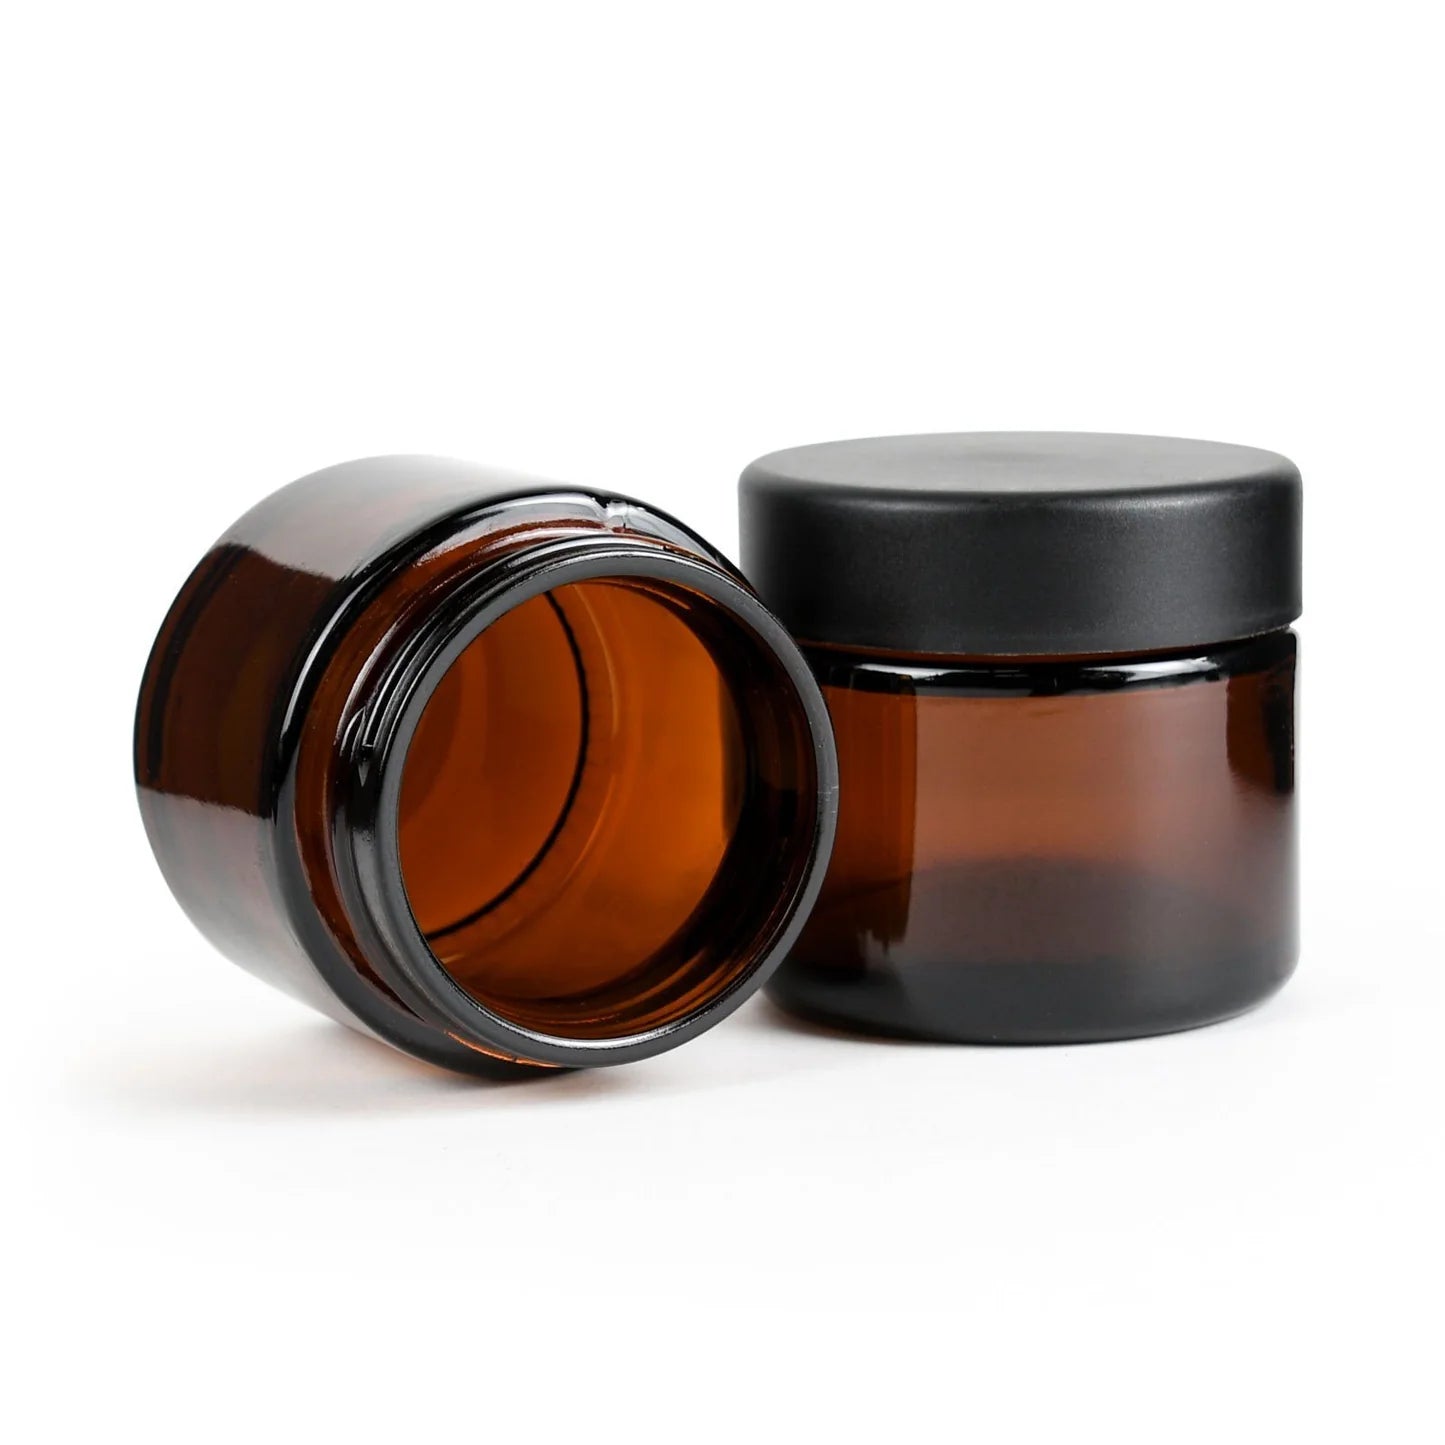 Premium 2oz Round Amber Glass Jar w/Matte Blackt Lid (200 count)